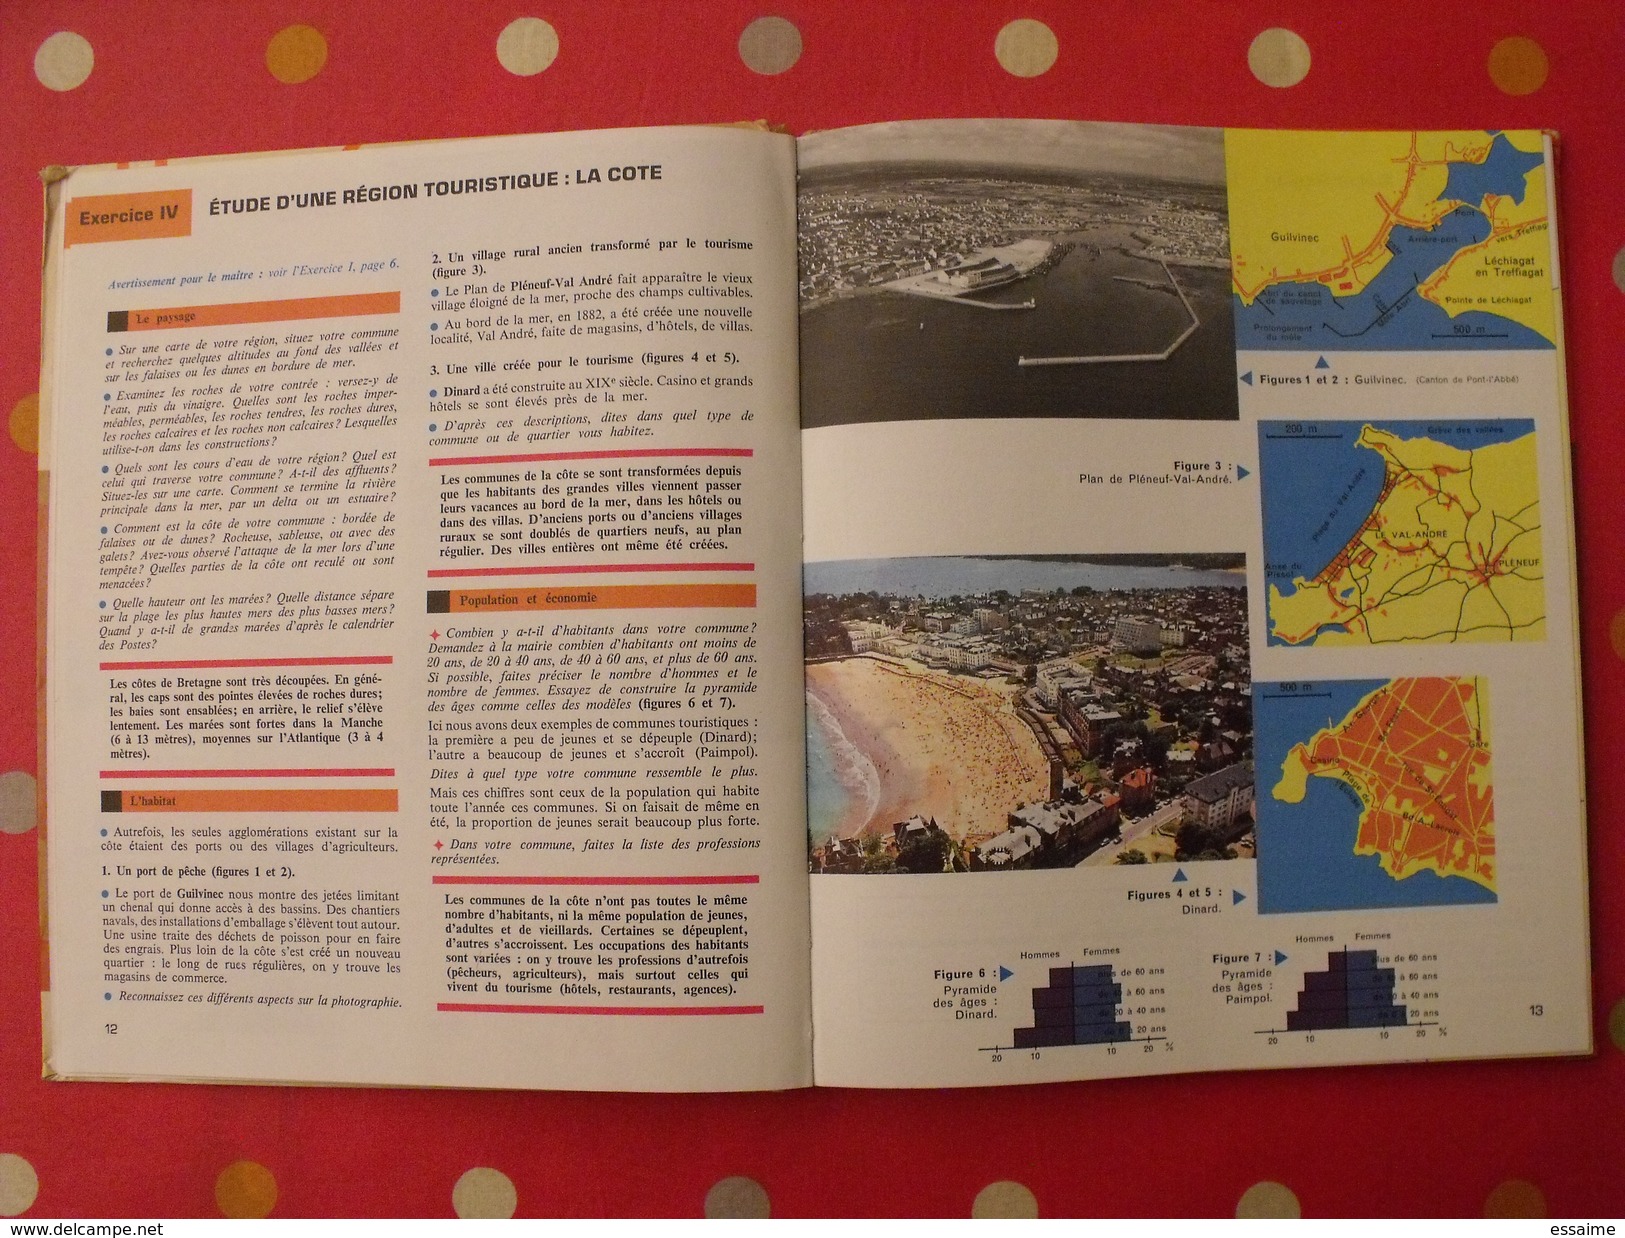 géographie de la Bretagne. collection notre milieu. 1968